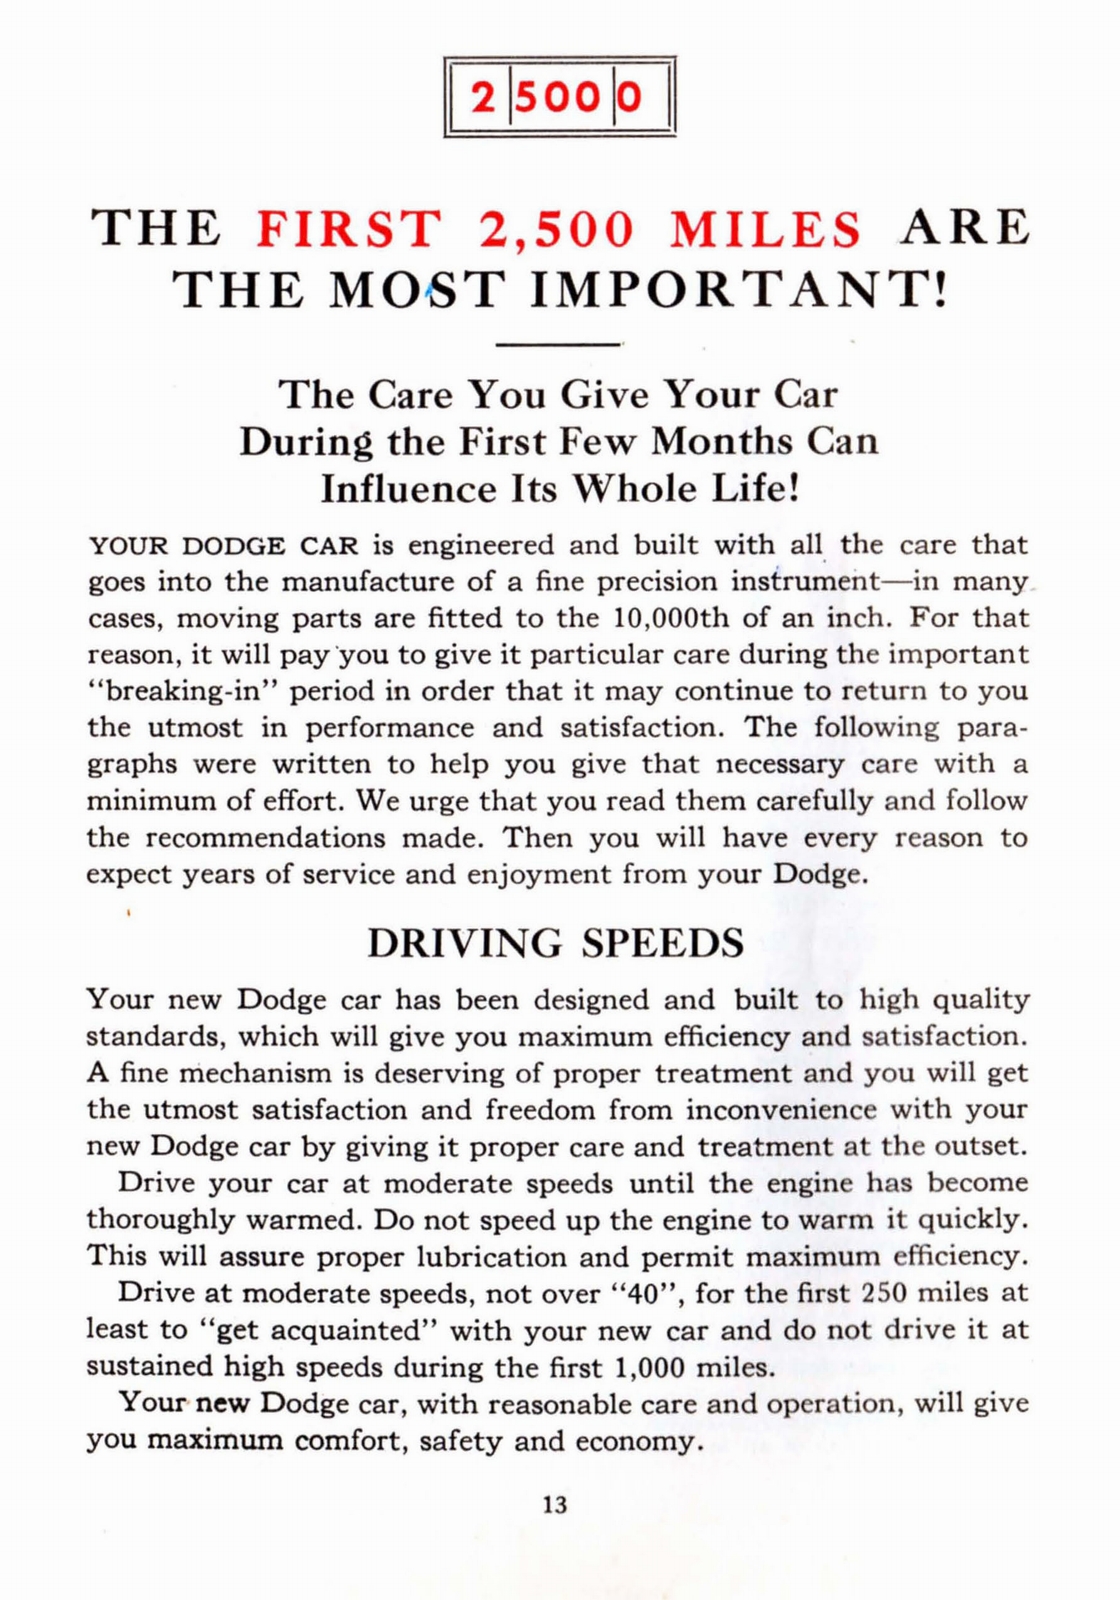 n_1941 Dodge Owners Manual-13.jpg